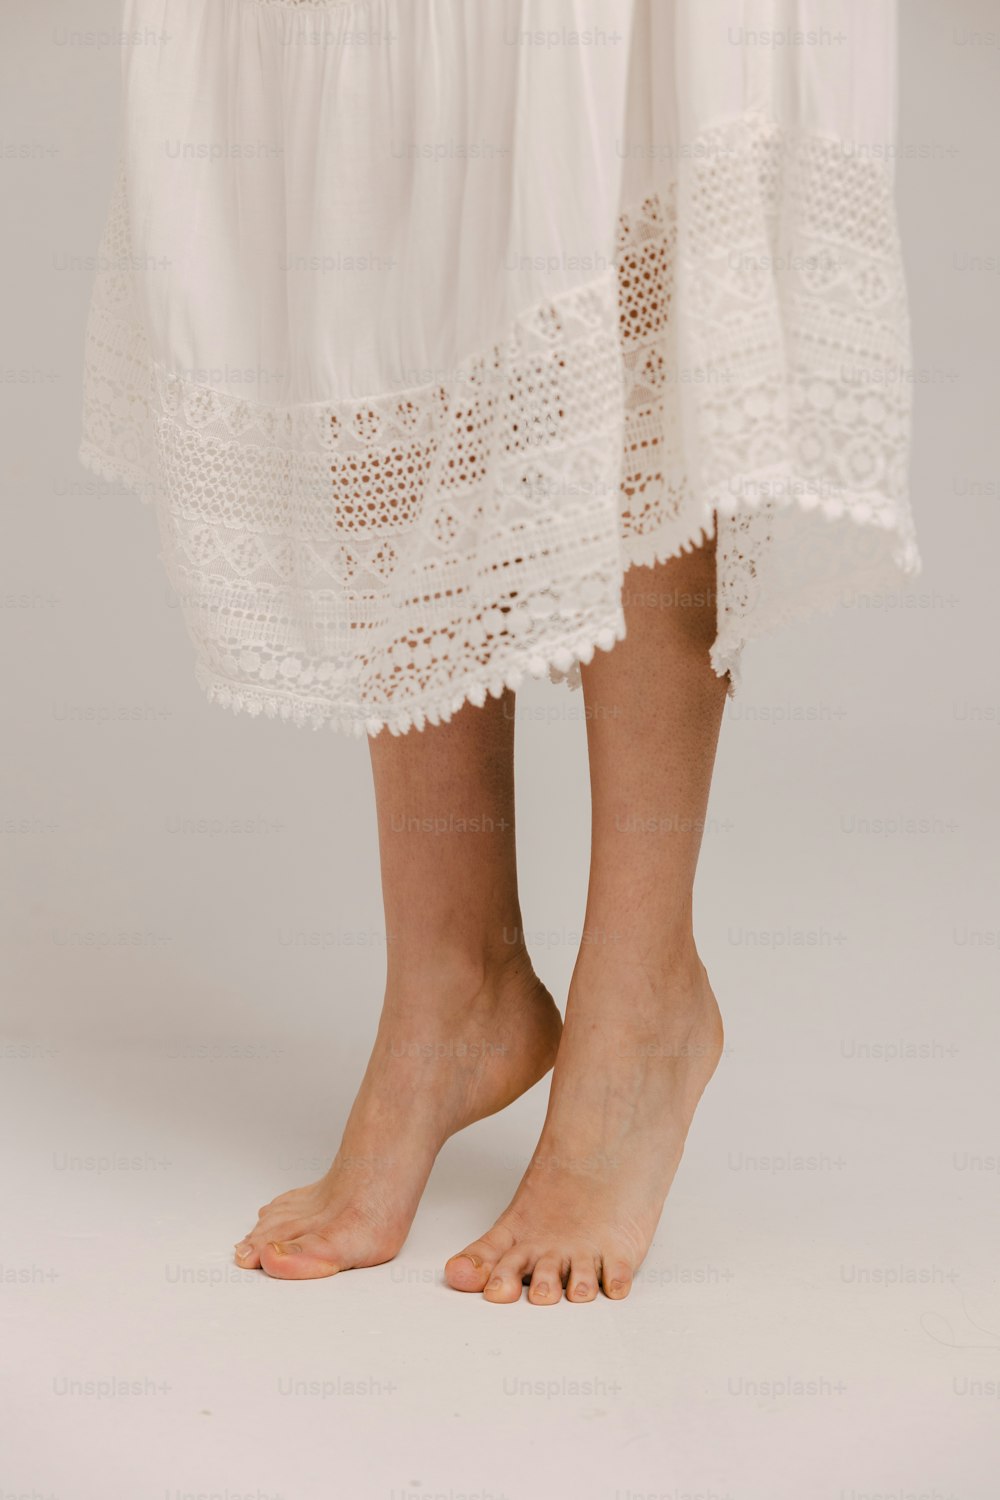 un primer plano de las piernas de una persona con un vestido blanco